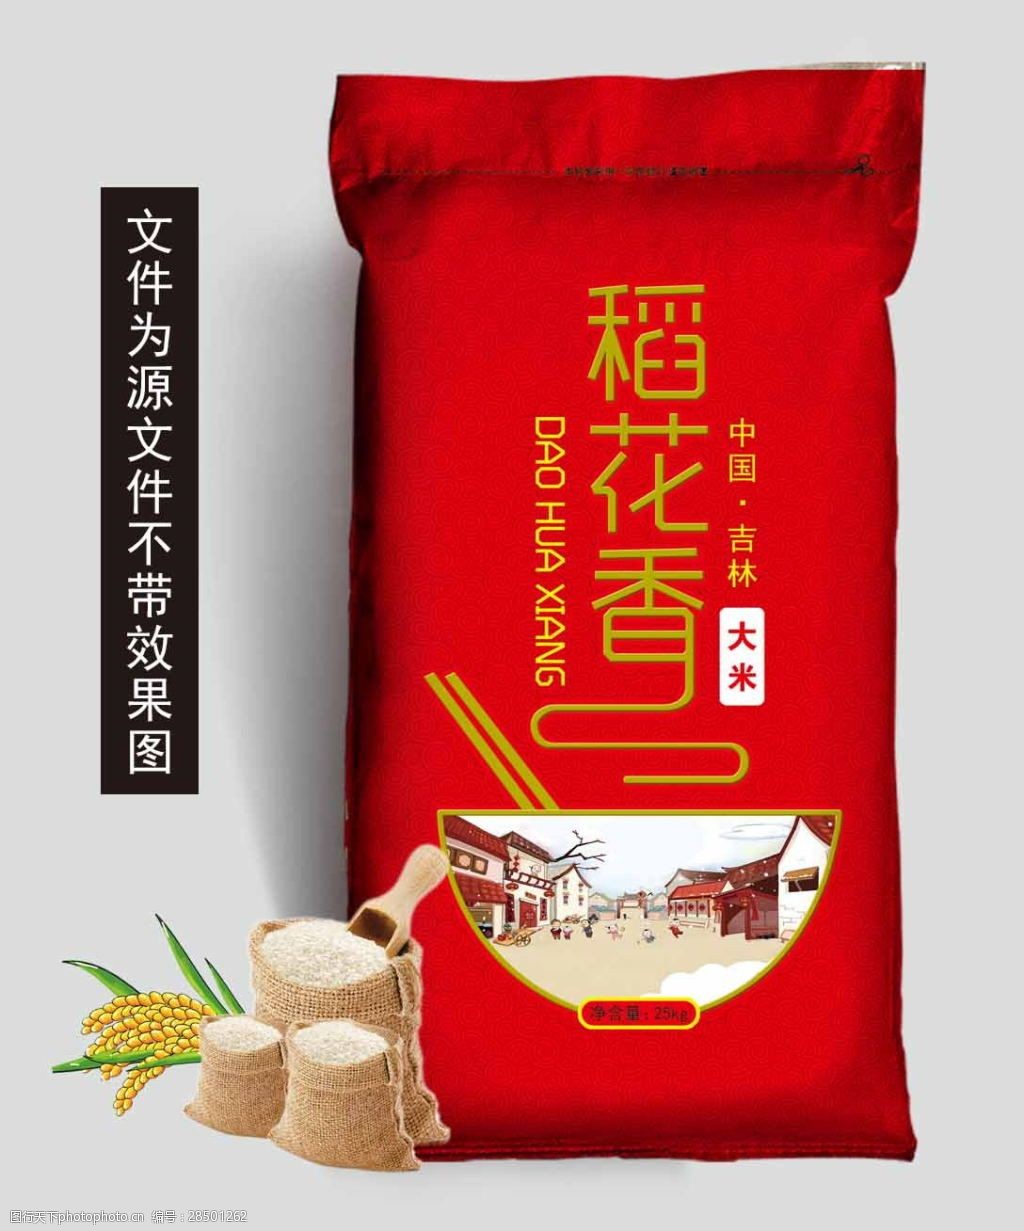 关键词:大米包装设计模板 稻花香 大米包装 红色设计 米碗 大米设计图